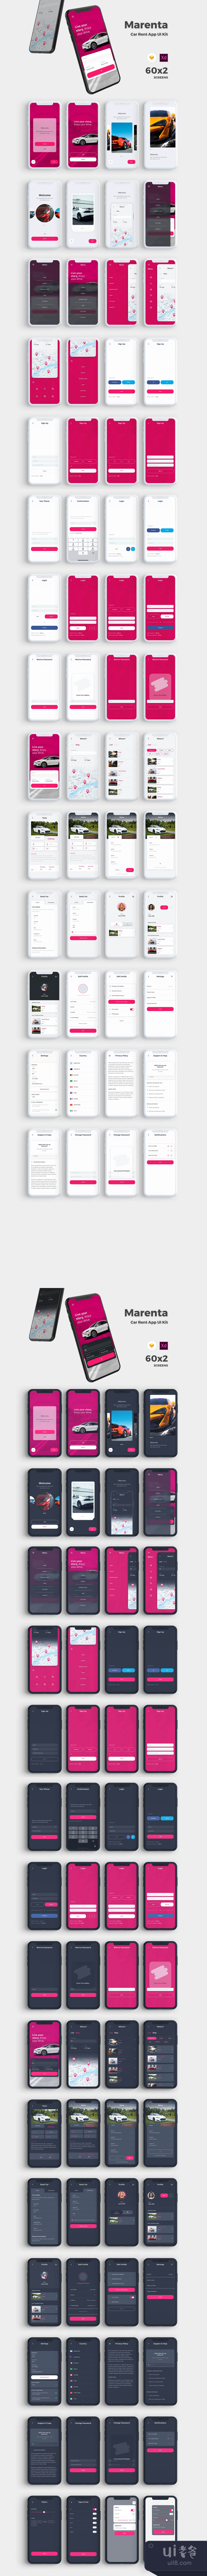 Marenta汽车租赁应用UI套件 (Marenta Car Rent App UI Kit)插图